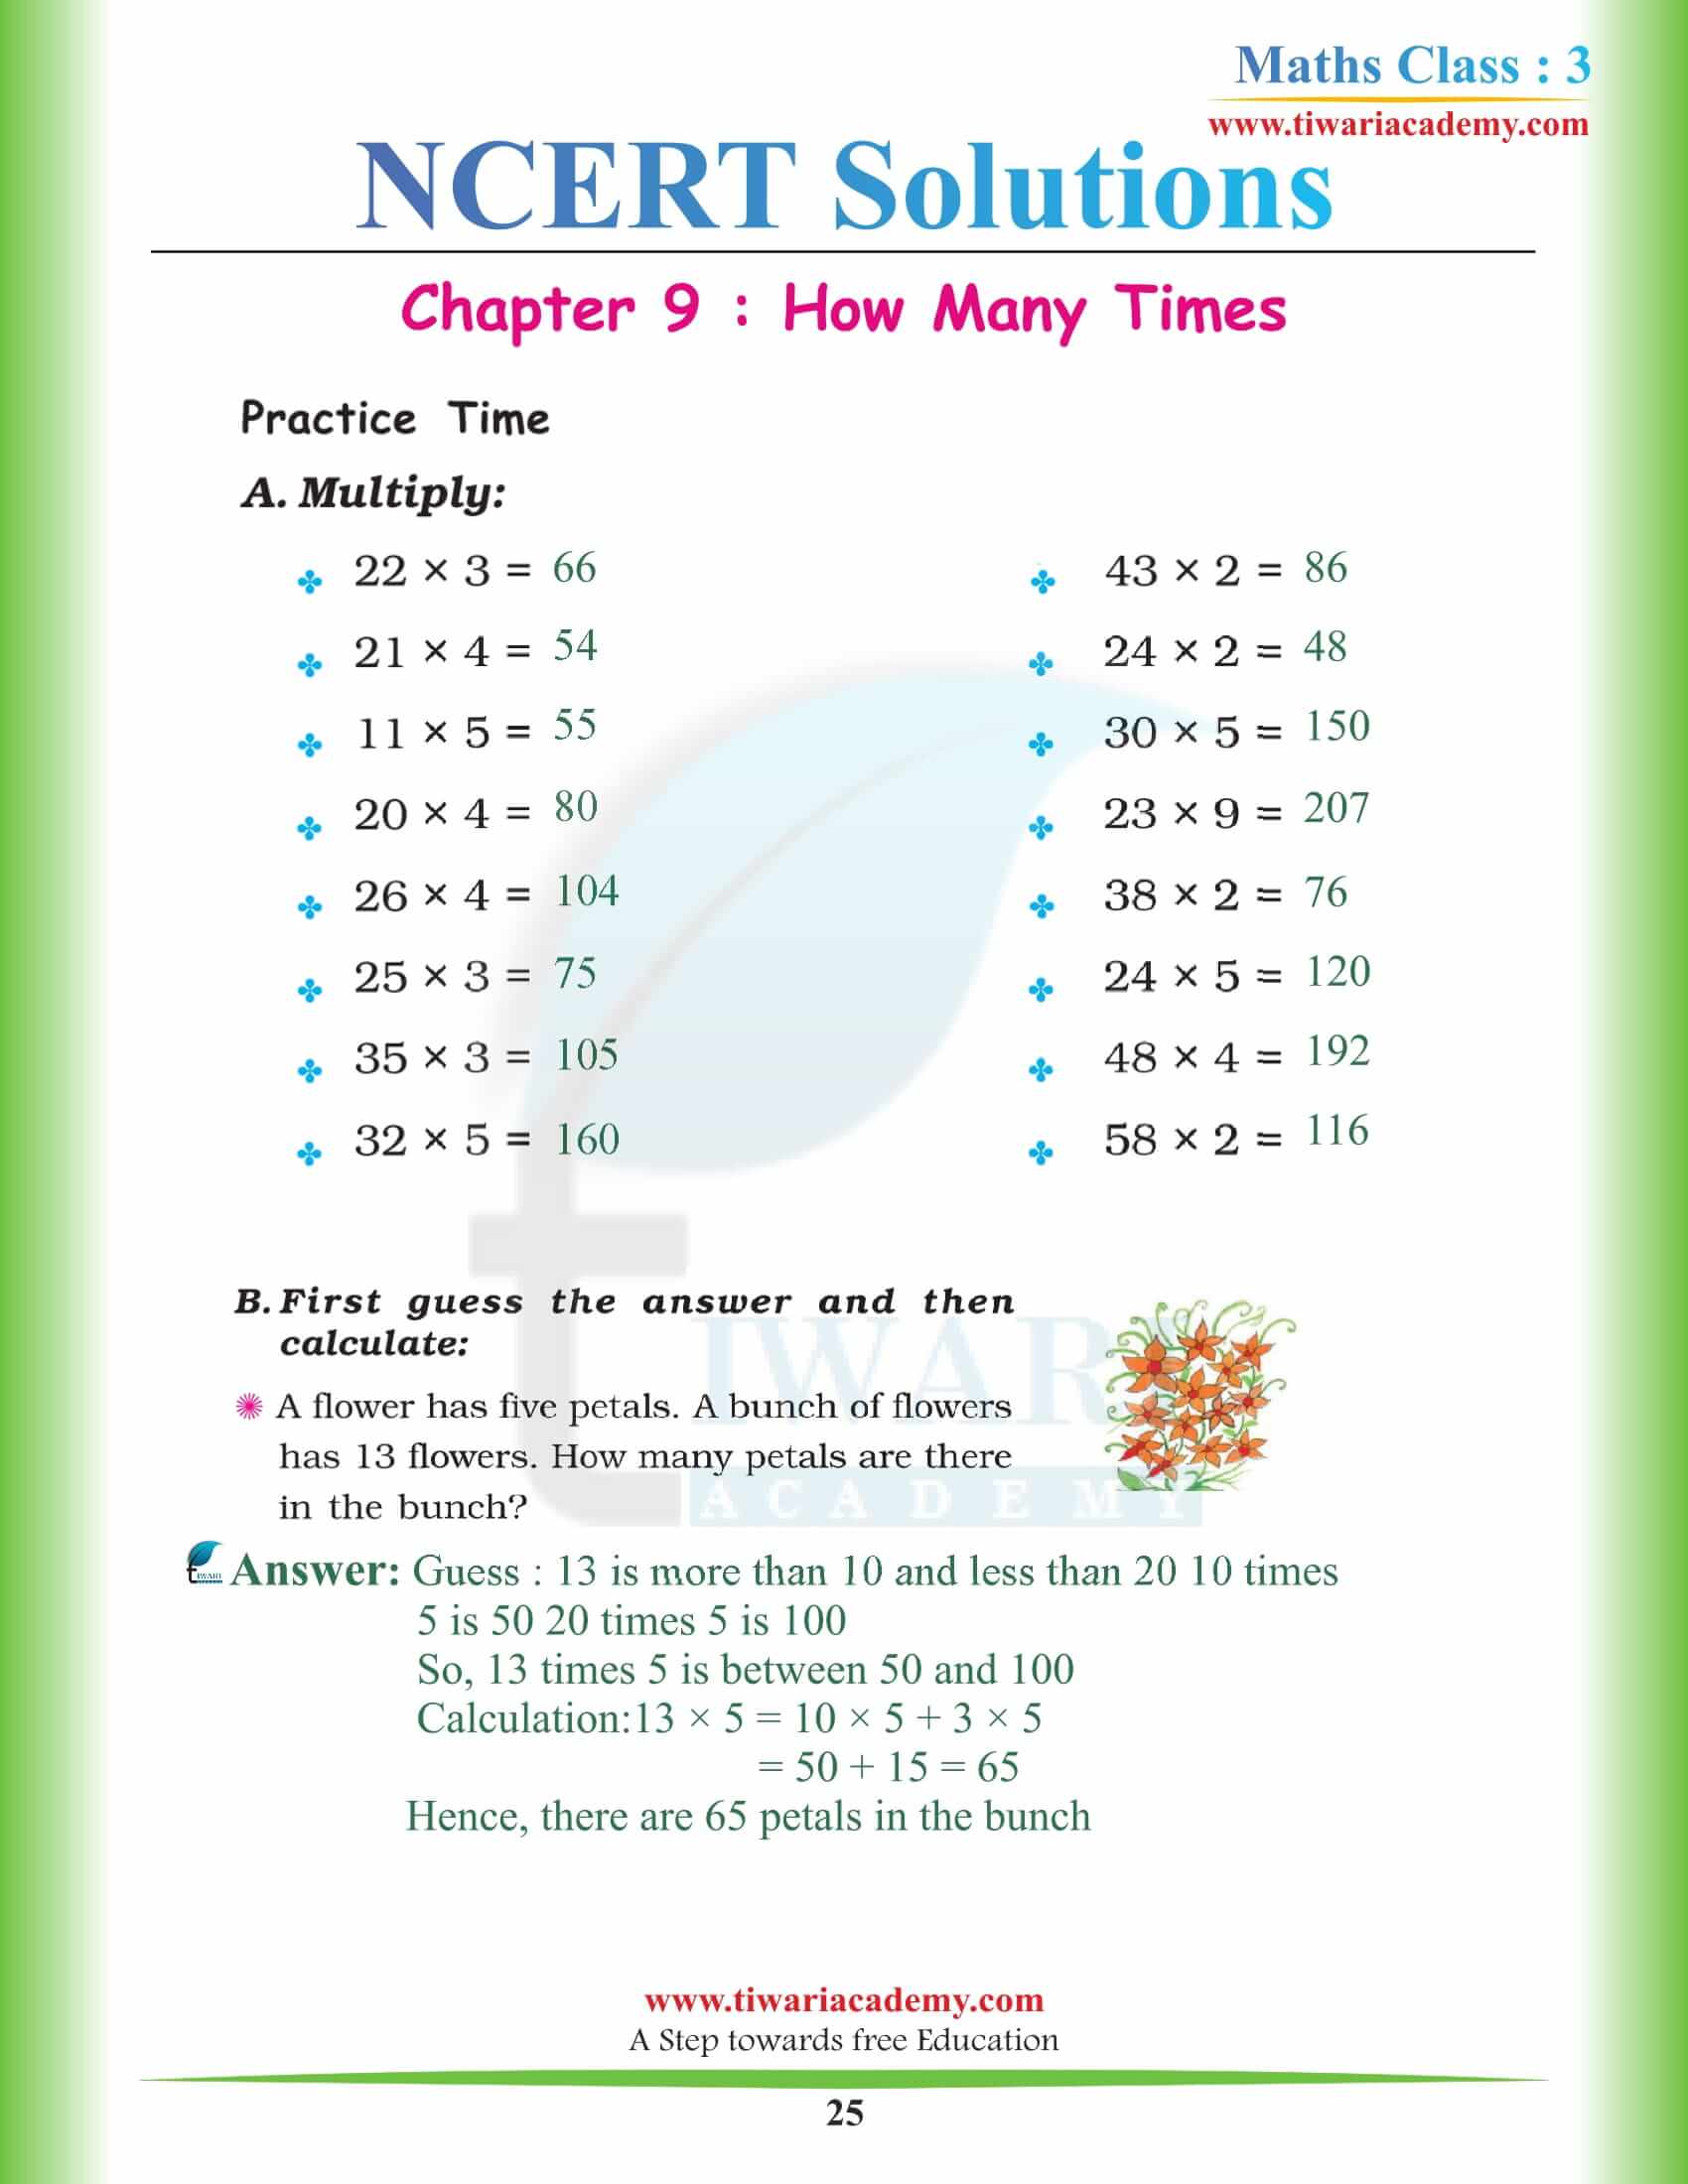 Standard 3 Maths NCERT Chapter 9 Solutions download